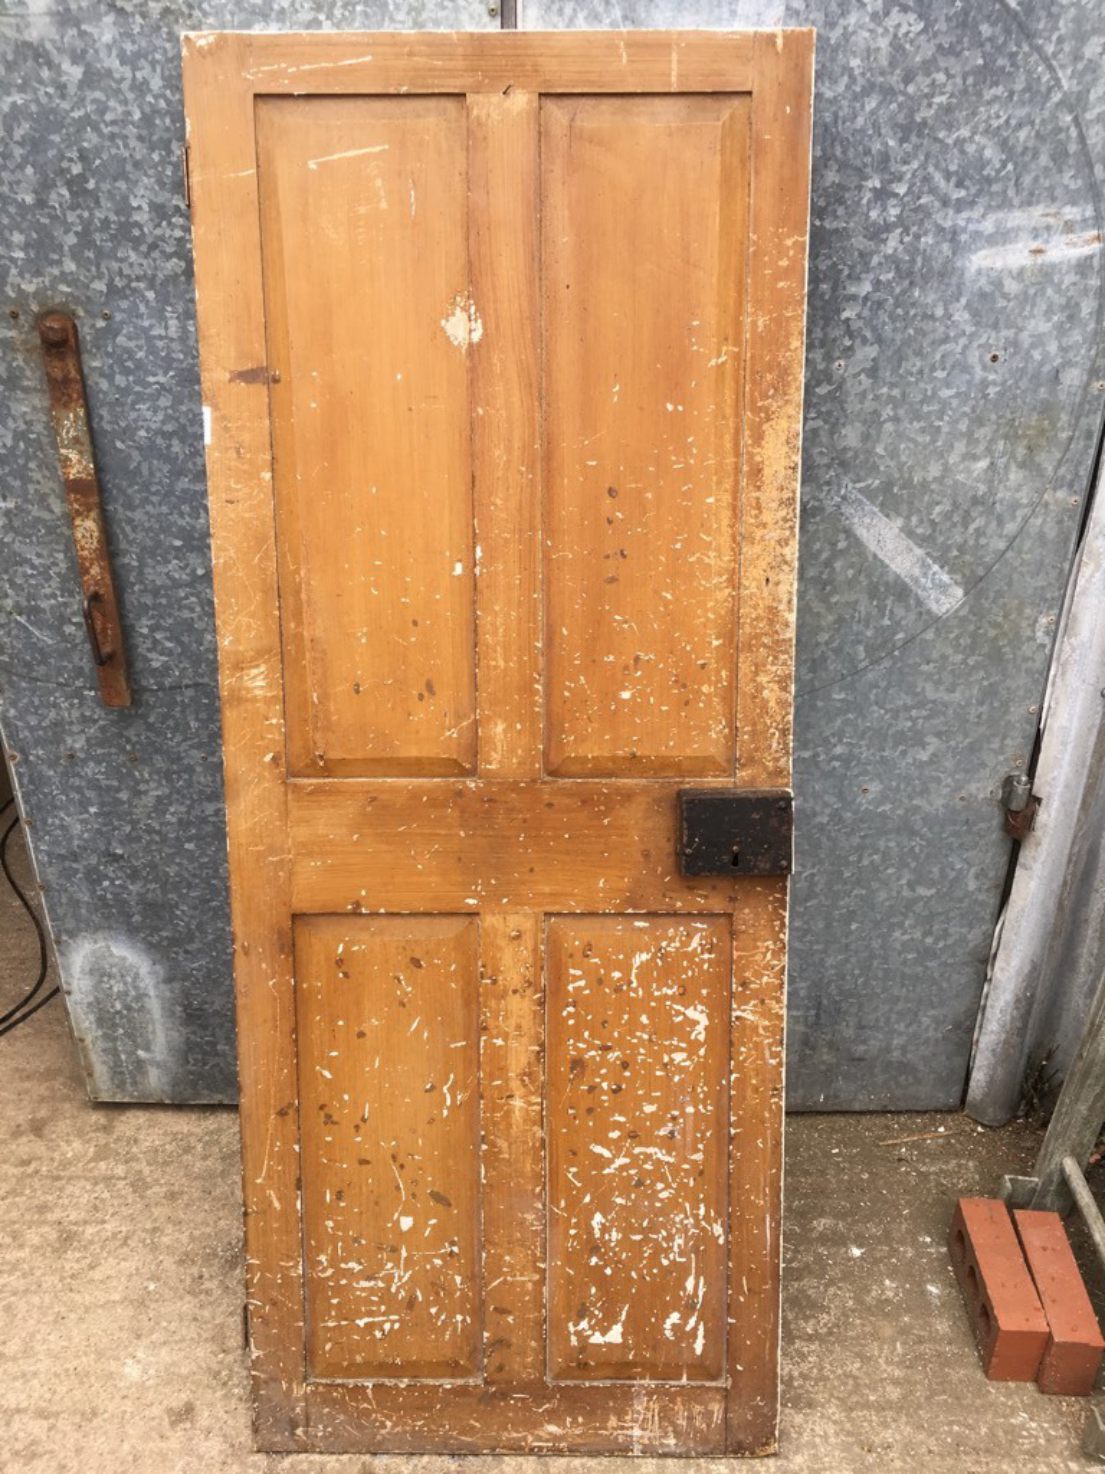 26 1/4”x65 3/4” Victorian Painted Pine Four Panel 2 Over 2 Narrow Internal Door